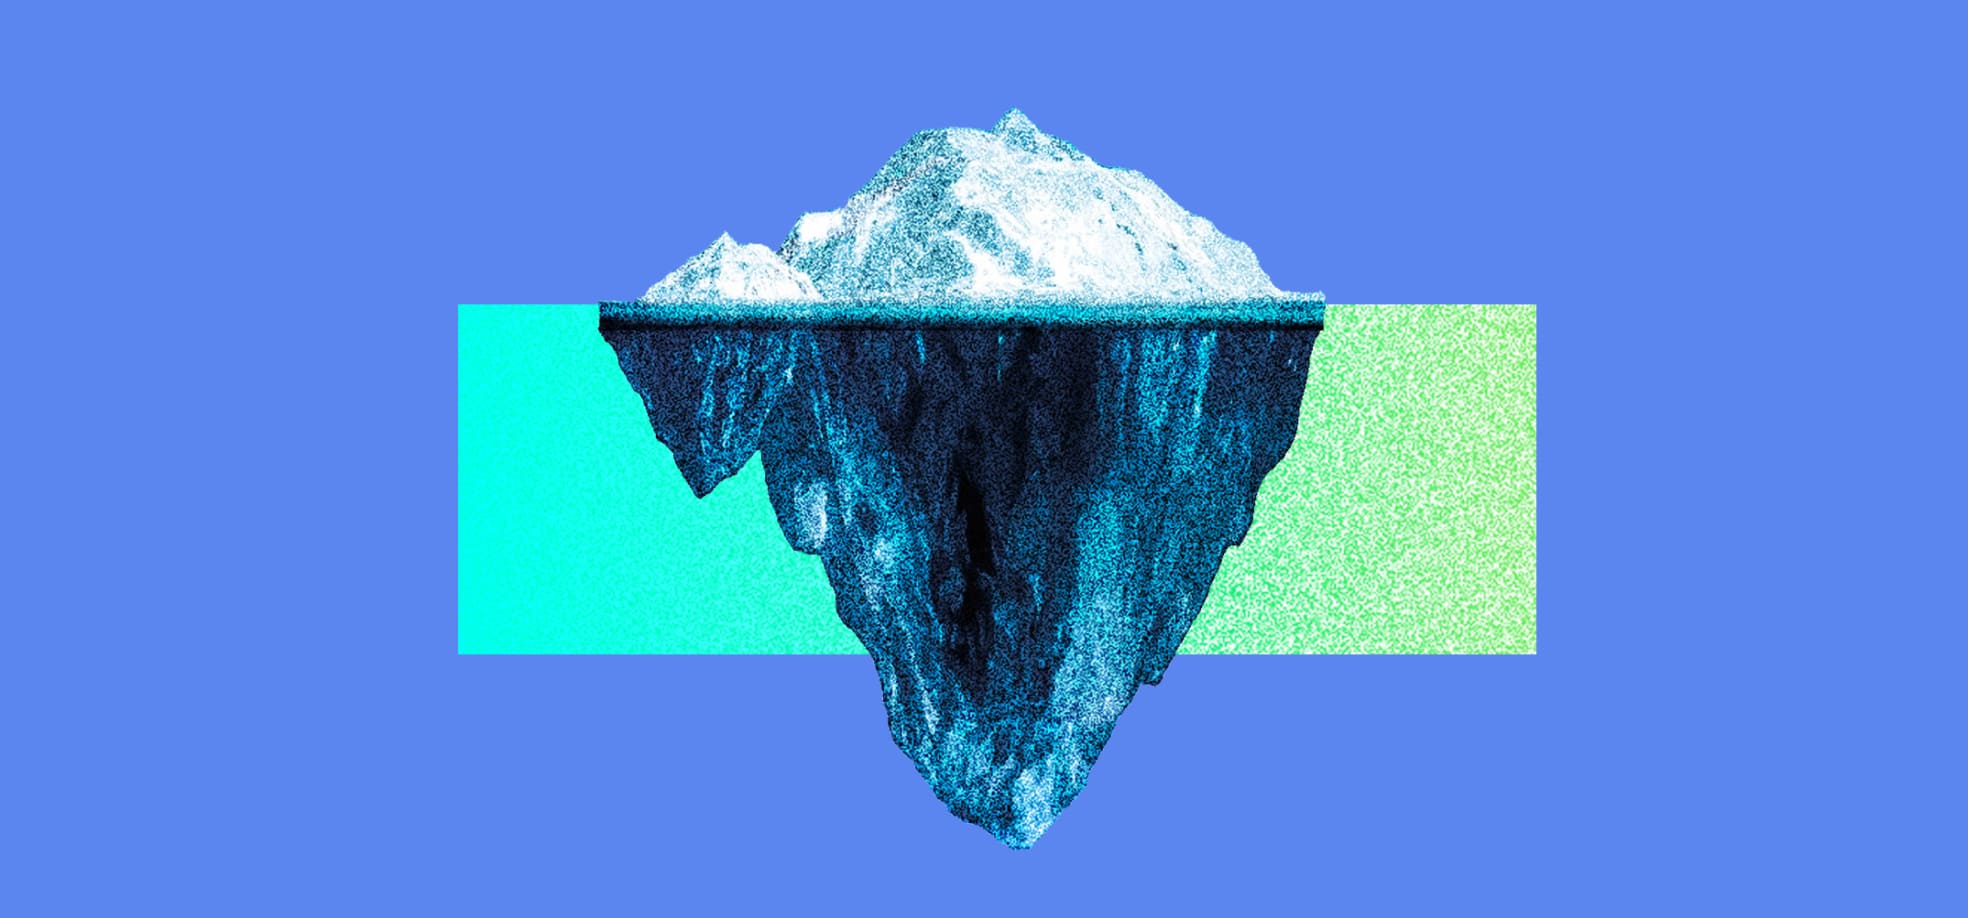 Iceberg sobre el fondo azul